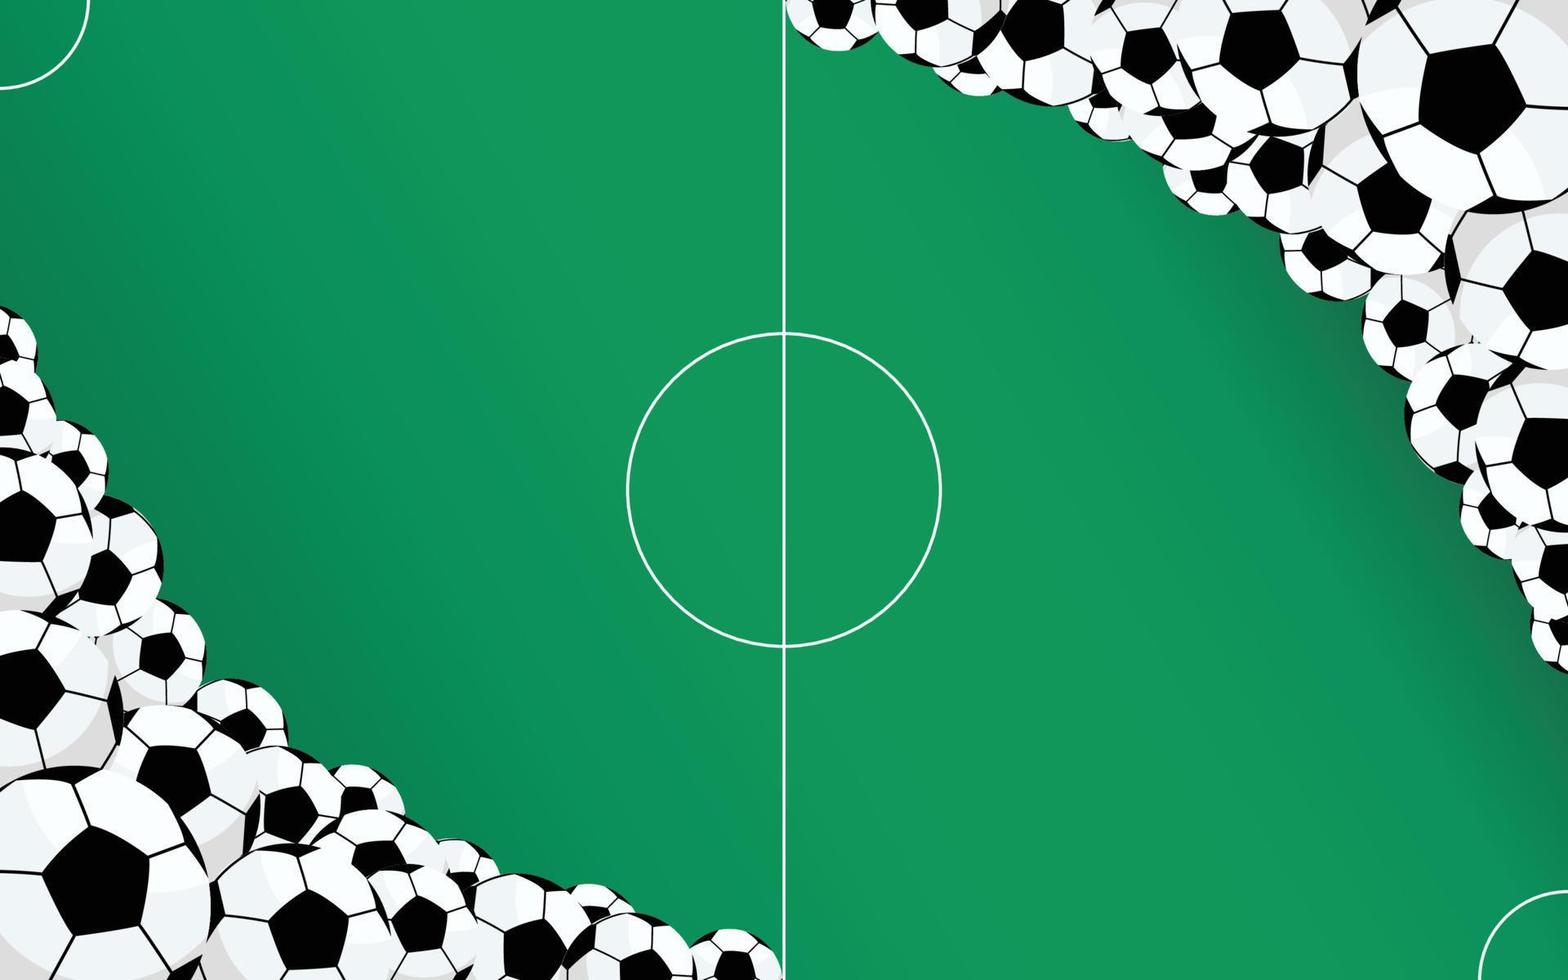 modelo de plano de fundo com tema de futebol com muitas bolas de futebol nos cantos e um campo de futebol no meio. vetor